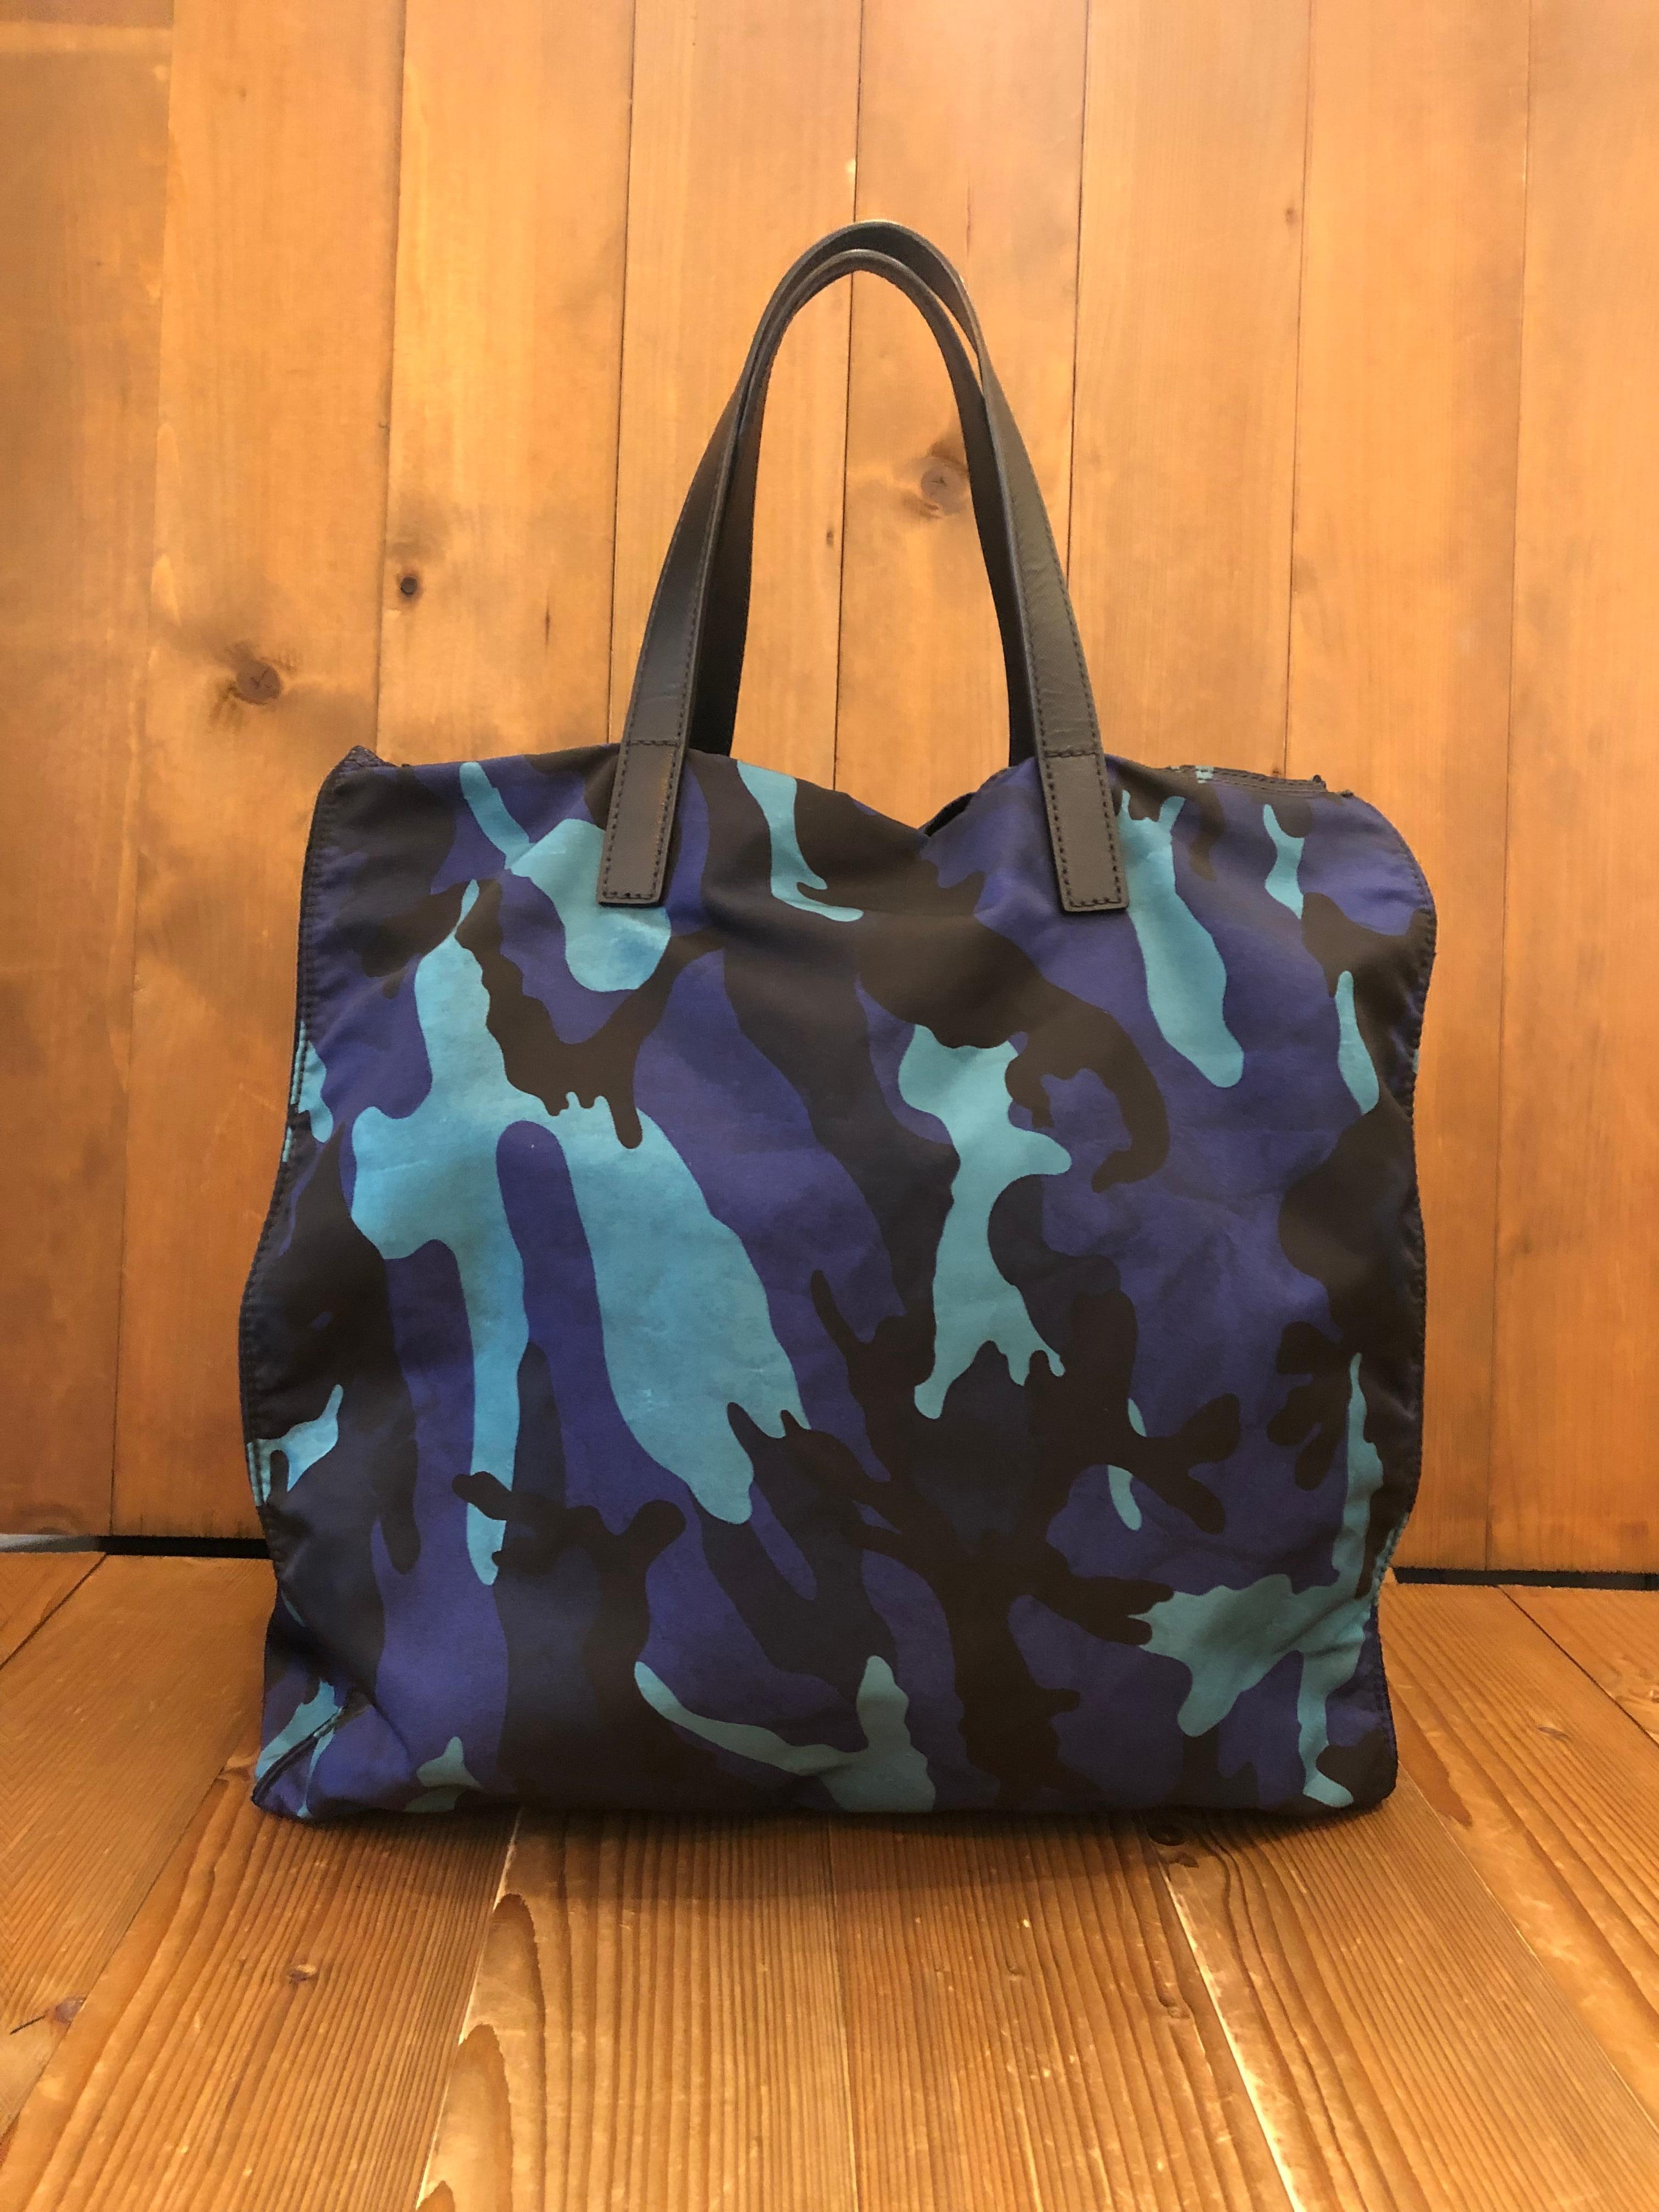 Ce sac fourre-tout à double sens de PRADA est confectionné en polyester camouflage marine/bleu et en cuir Saffiano. Ce sac fourre-tout léger présente des accessoires noirs mats, des poignées en cuir Saffiano et une bandoulière amovible qui permet de